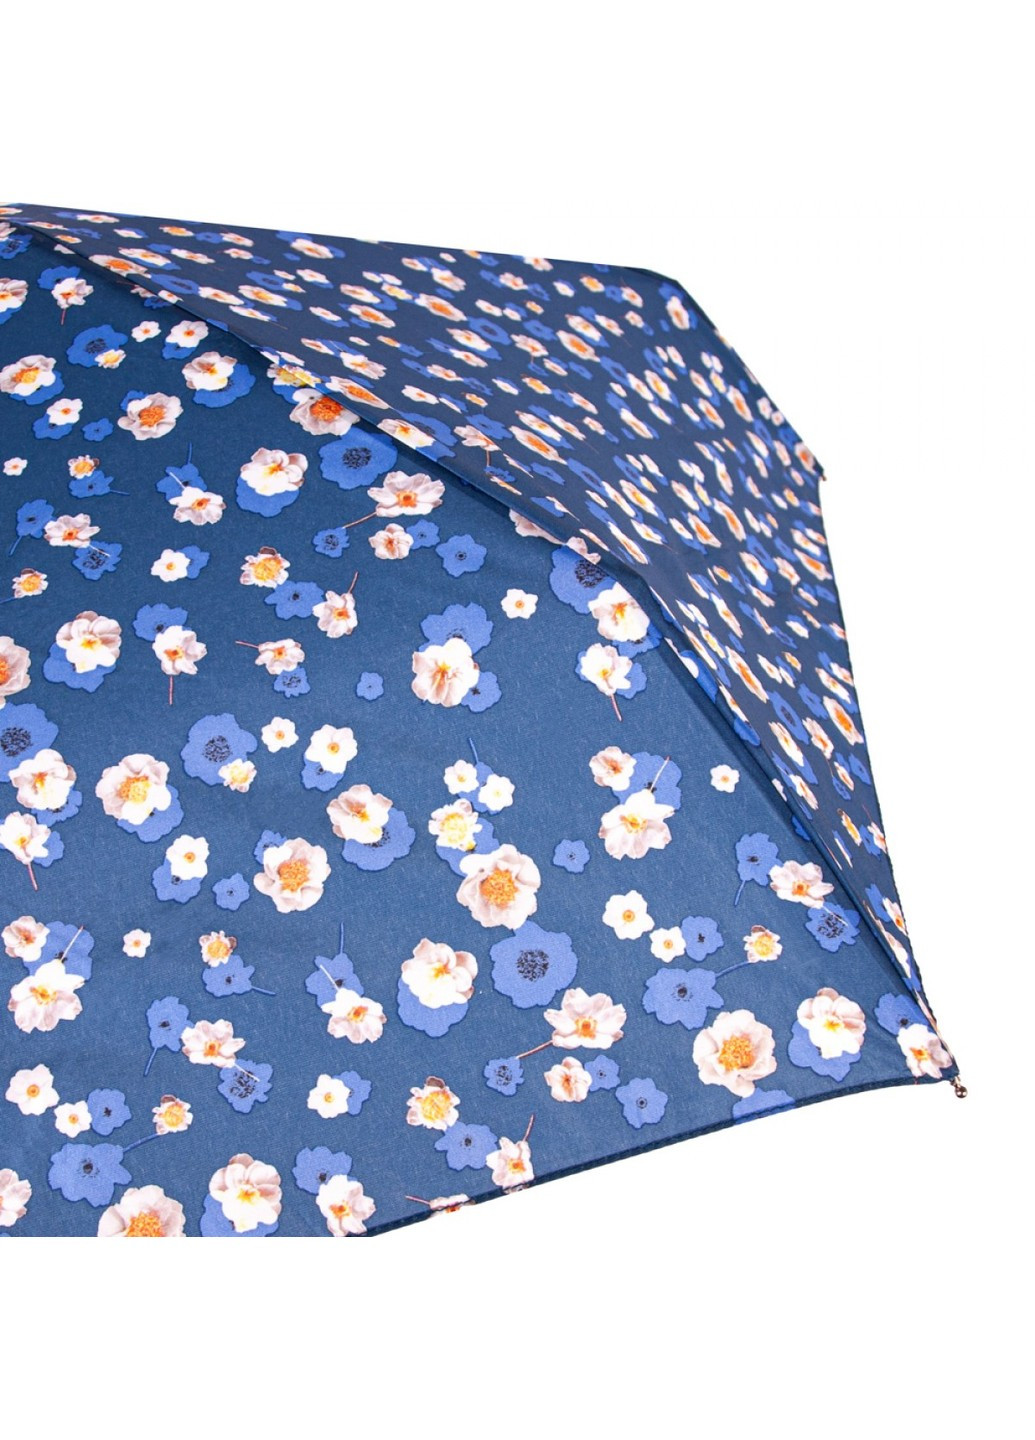 Механический женский зонт Soho-2 L859 Shadow Bloom (Тенистый цветок) Fulton (262449448)